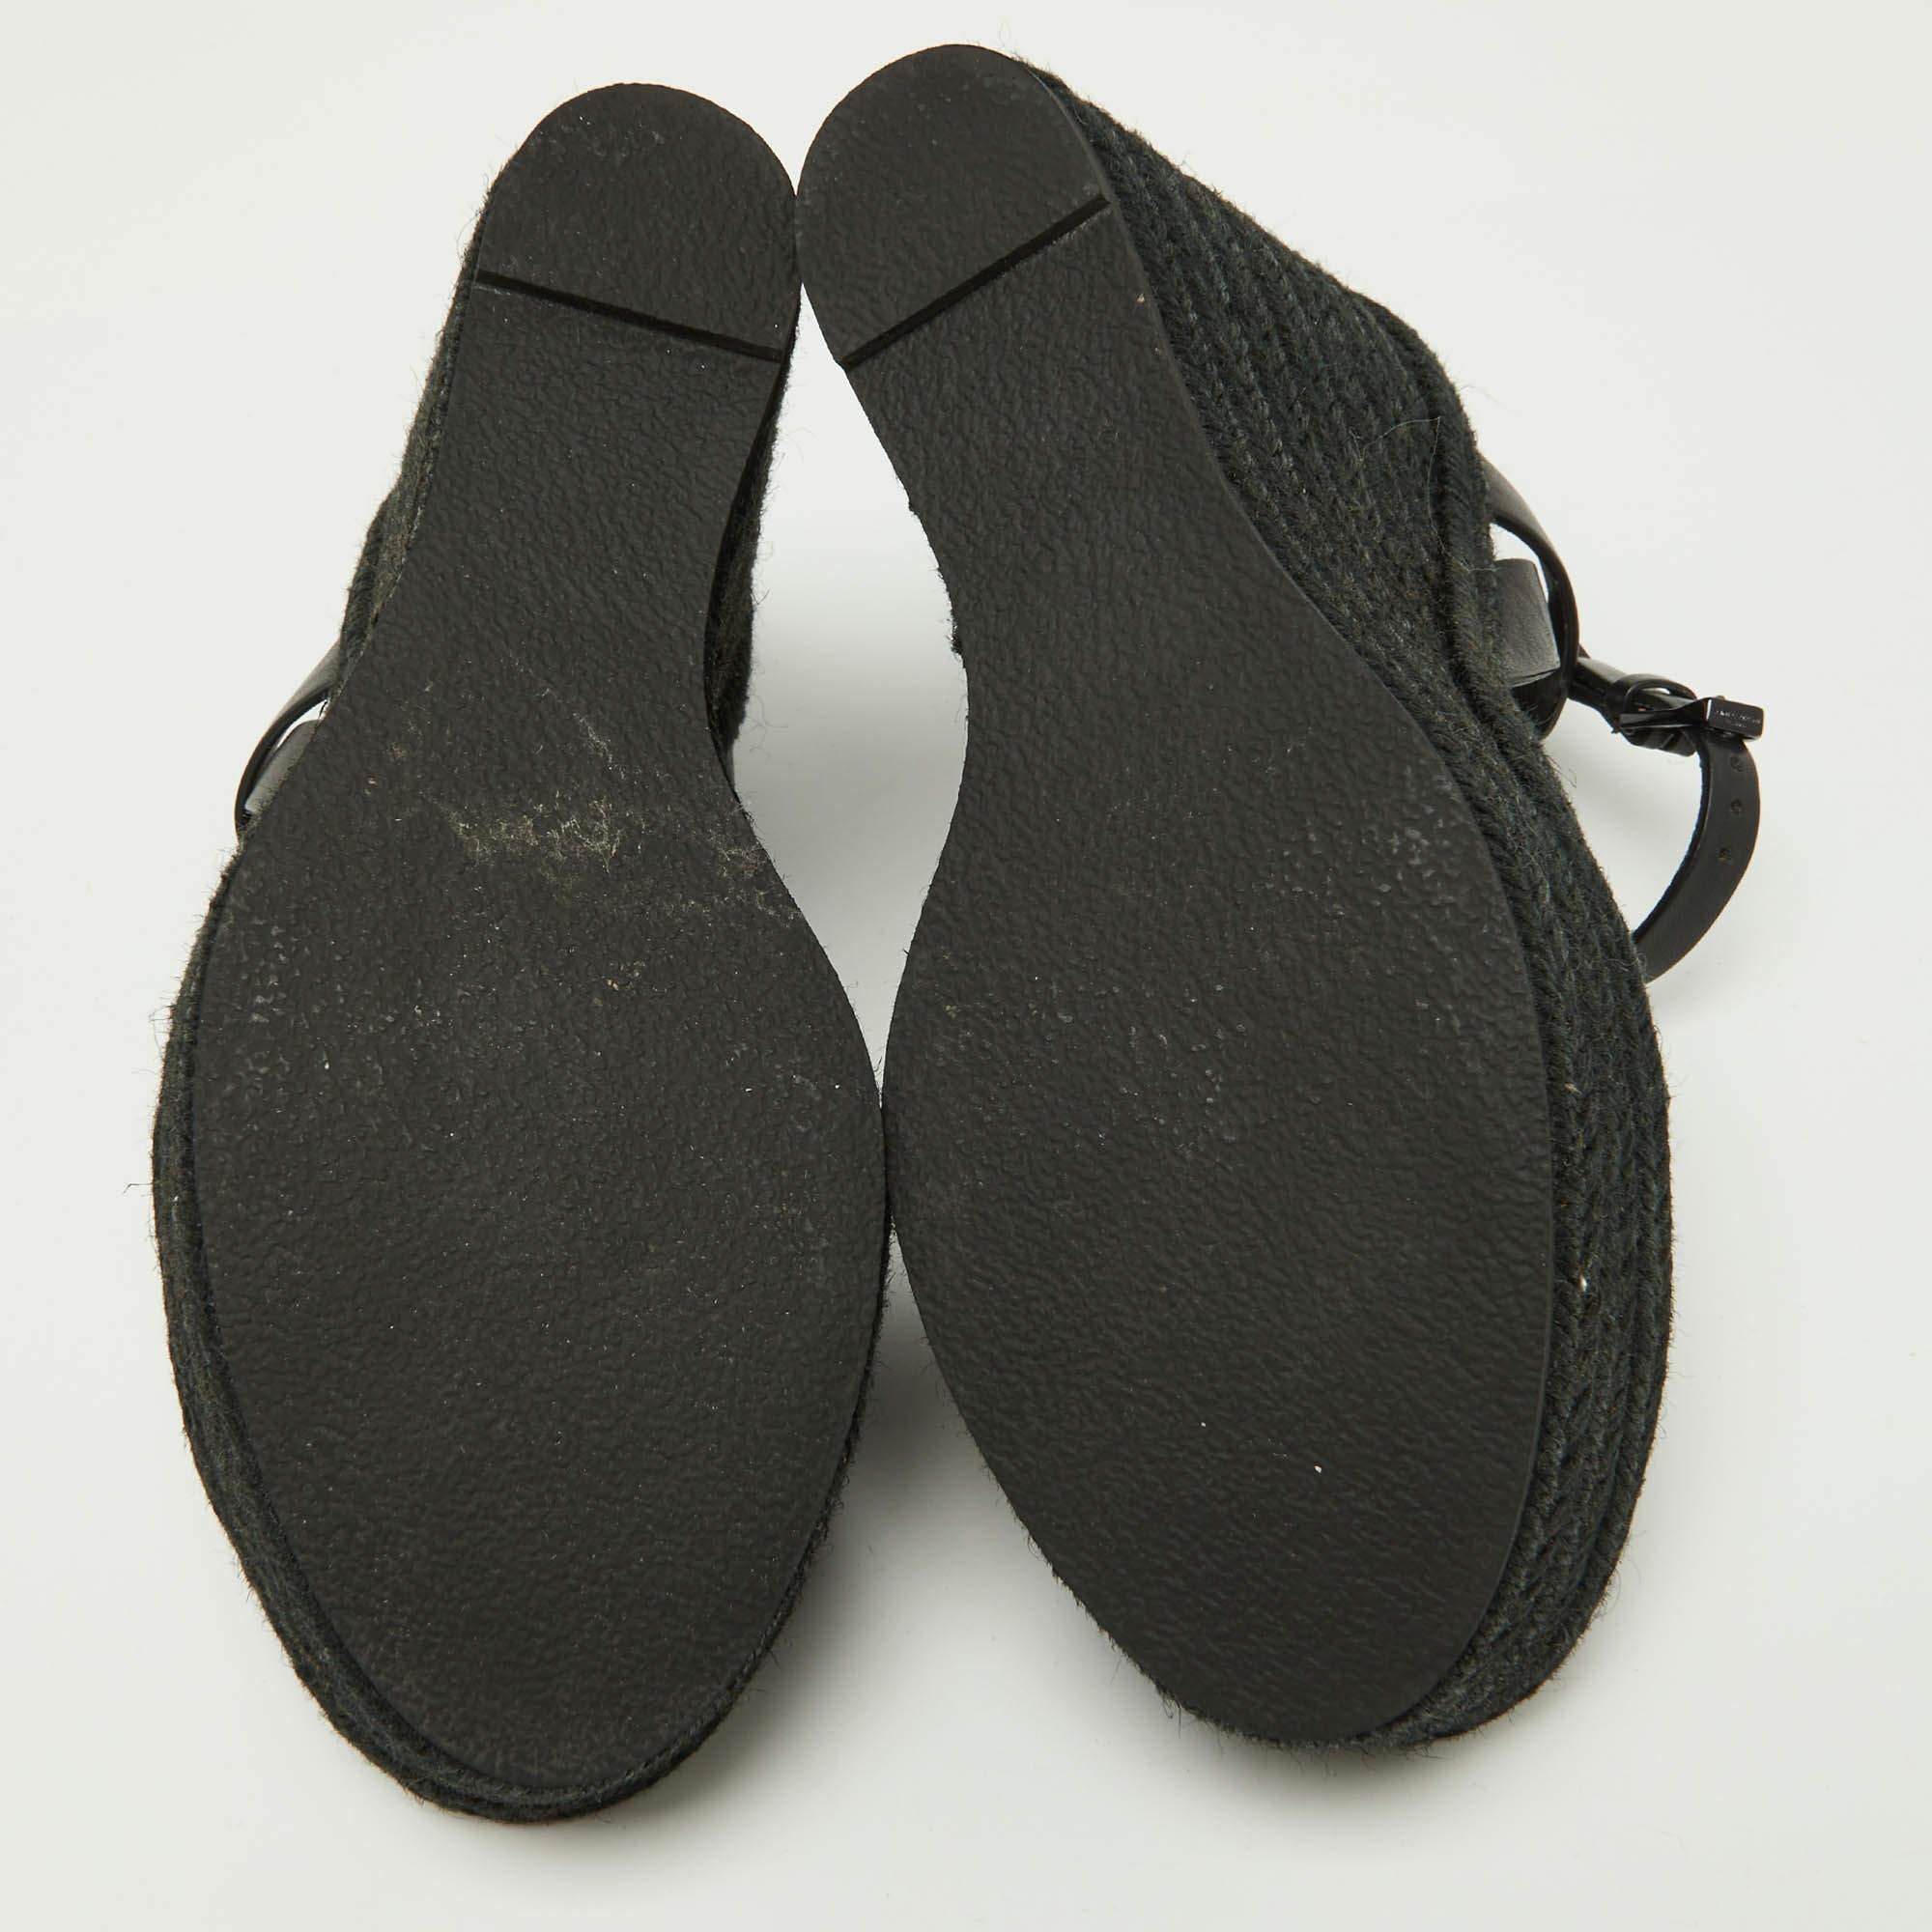 Saint Laurent Black Leather Tribute Espadrilles Wedge Sandals Size 38 1